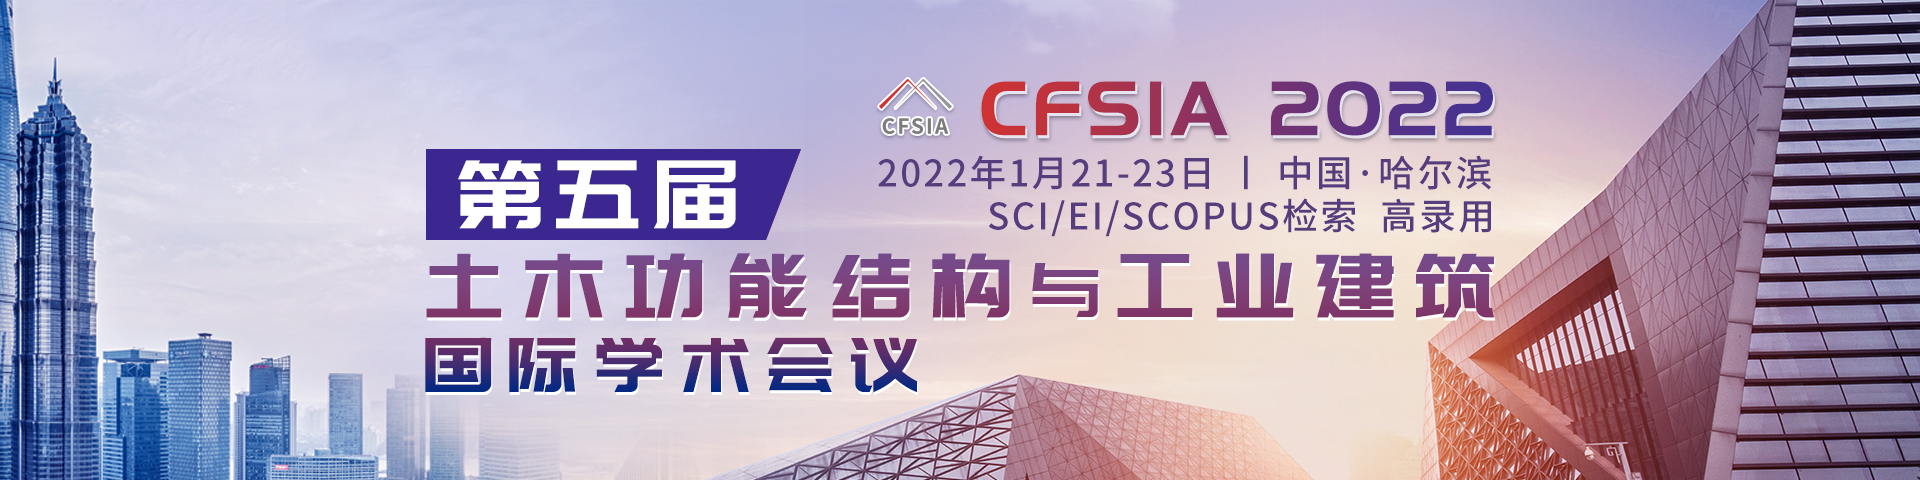 CFSIA 2022-.jpg